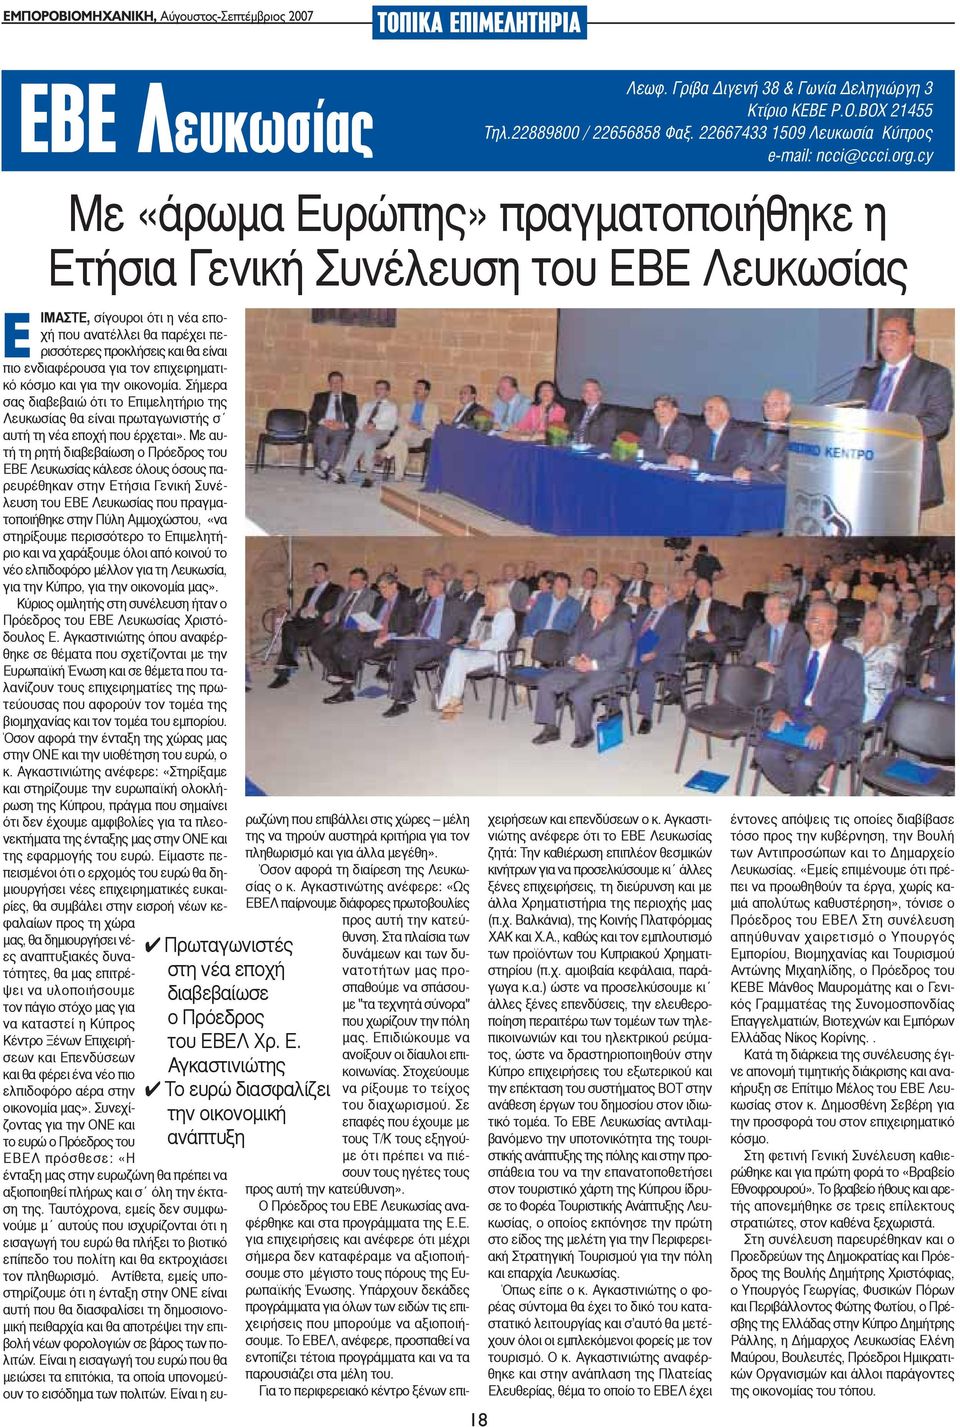 Με αυτή τη ρητή διαβεβαίωση ο Πρόεδρος του ΕΒΕ Λευκωσίας κάλεσε όλους όσους παρευρέθηκαν στην Ετήσια Γενική Συνέλευση του ΕΒΕ Λευκωσίας που πραγματοποιήθηκε στην Πύλη Αμμοχώστου, «να στηρίξουμε